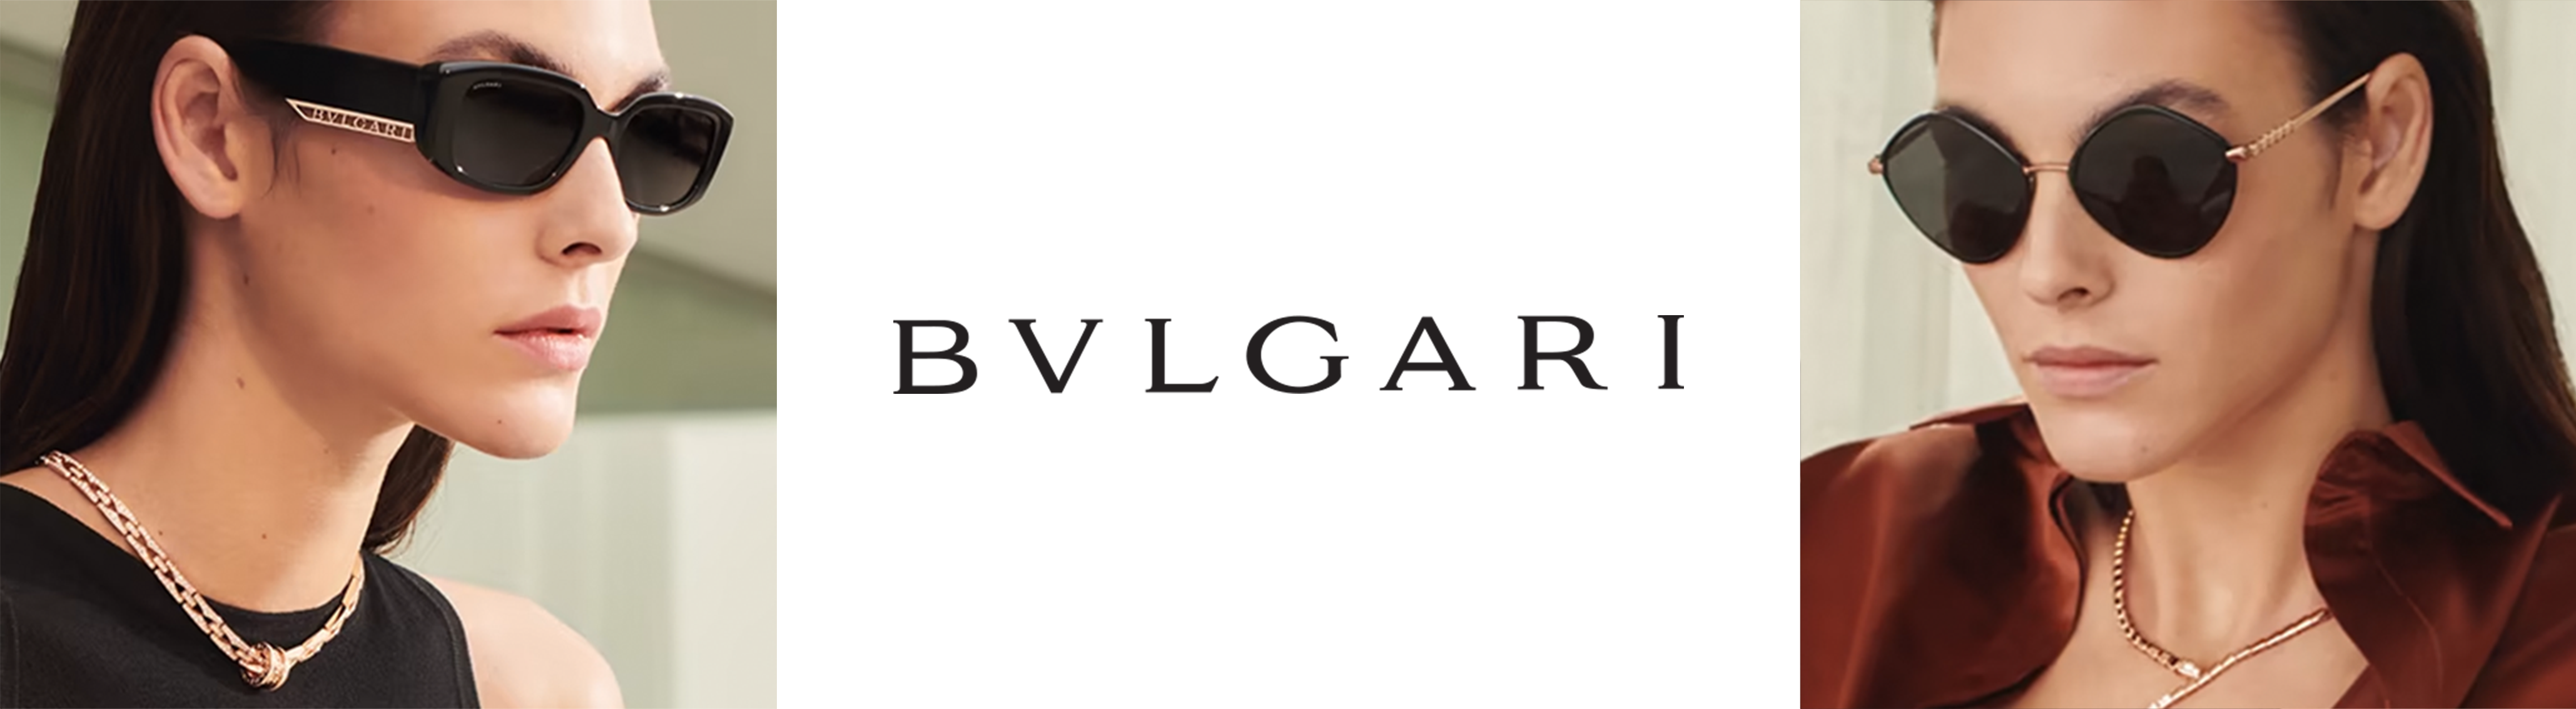 Mắt kính thương hiệu BVLGARI